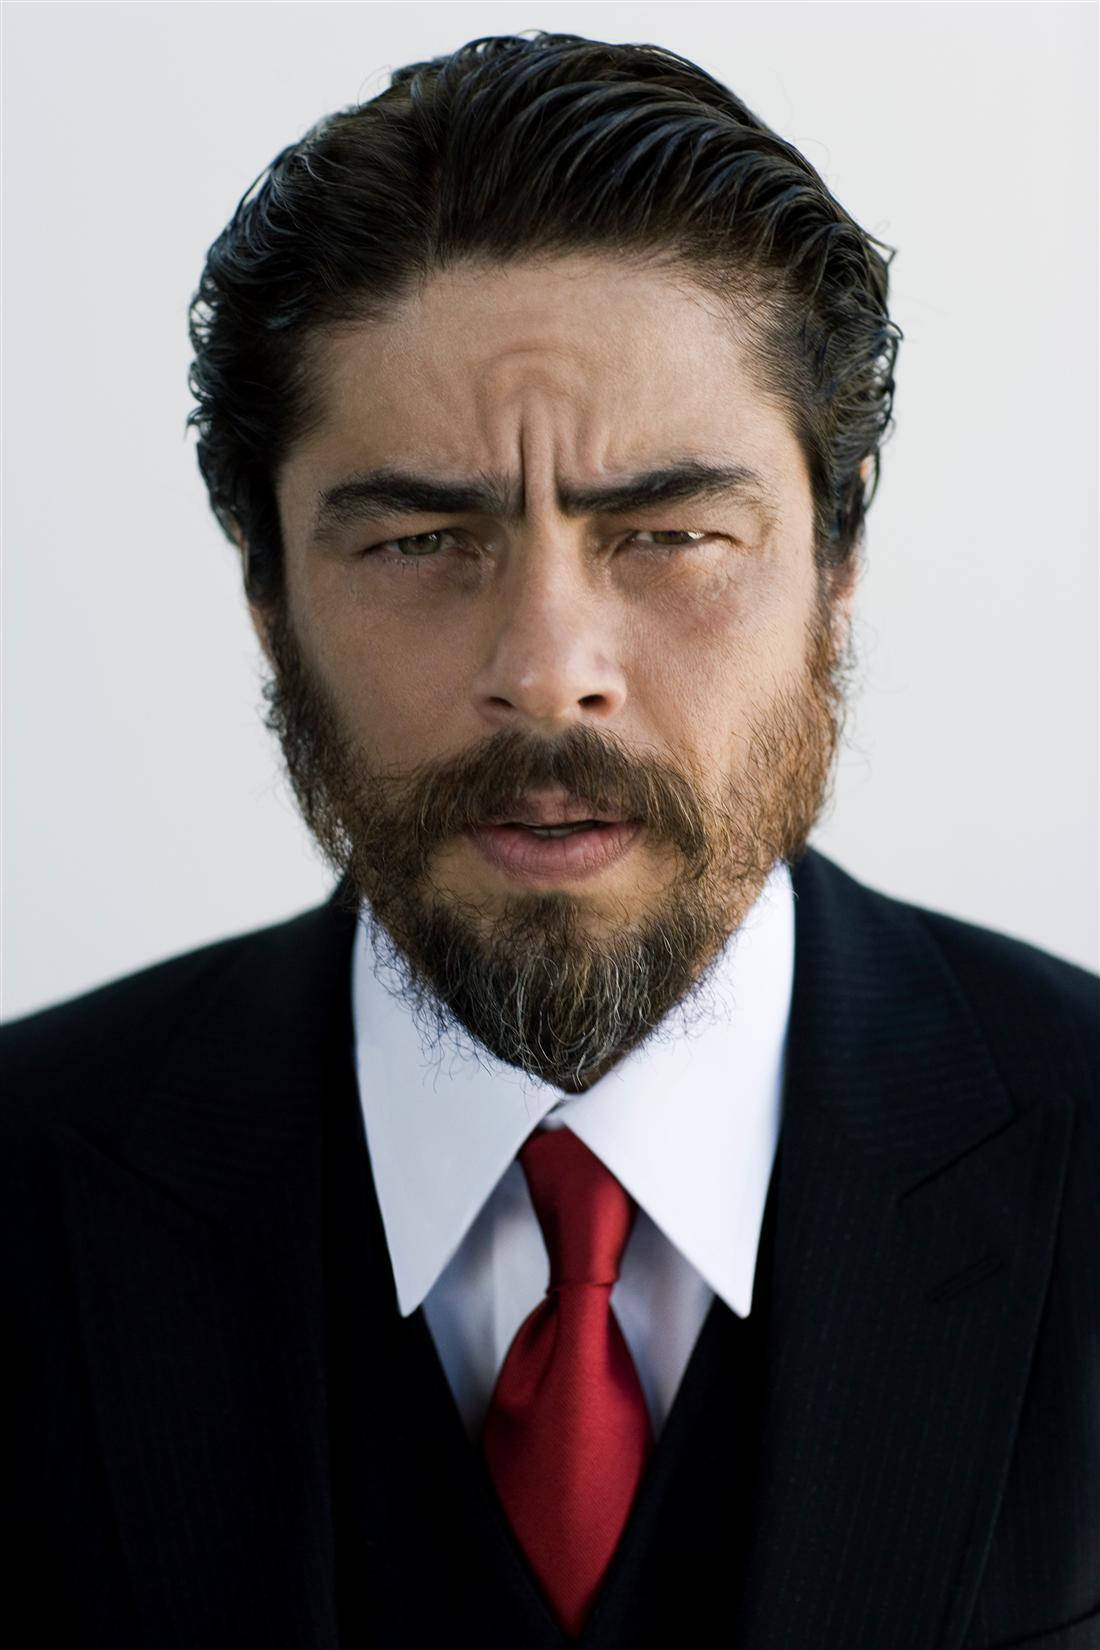 Benicio Del Toro 2012 Close Up Portrait Wallpaper